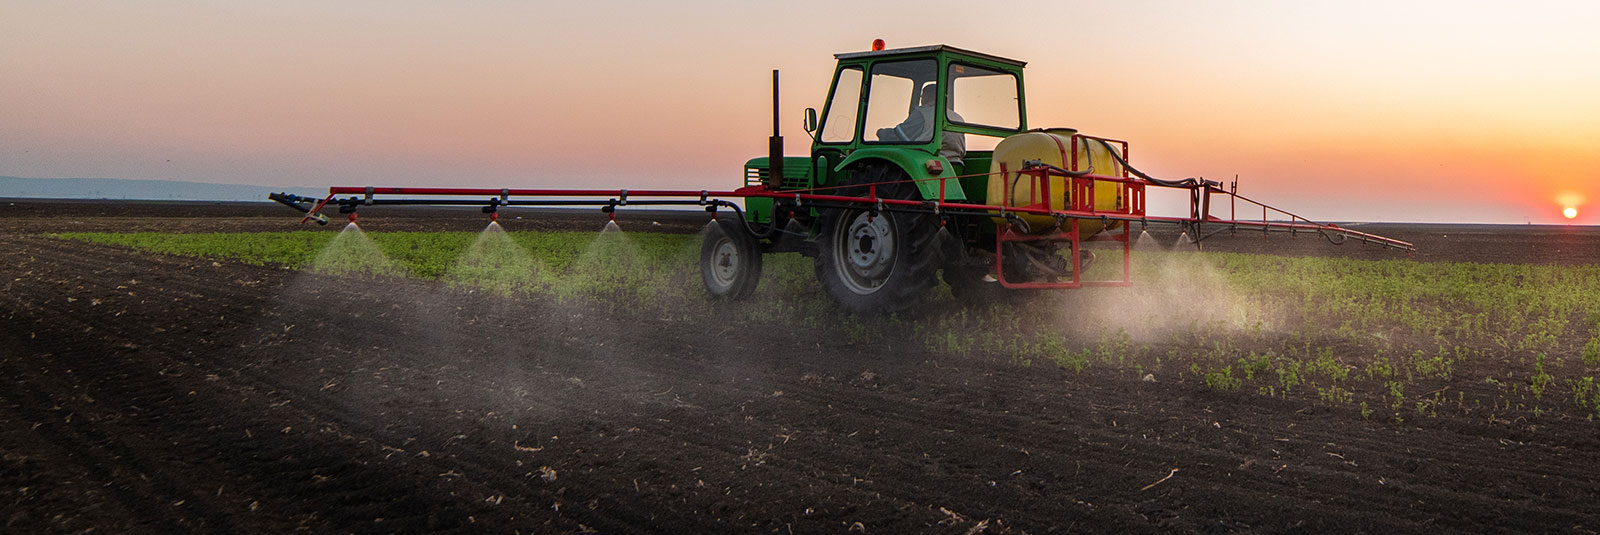 Tractor in soybean field